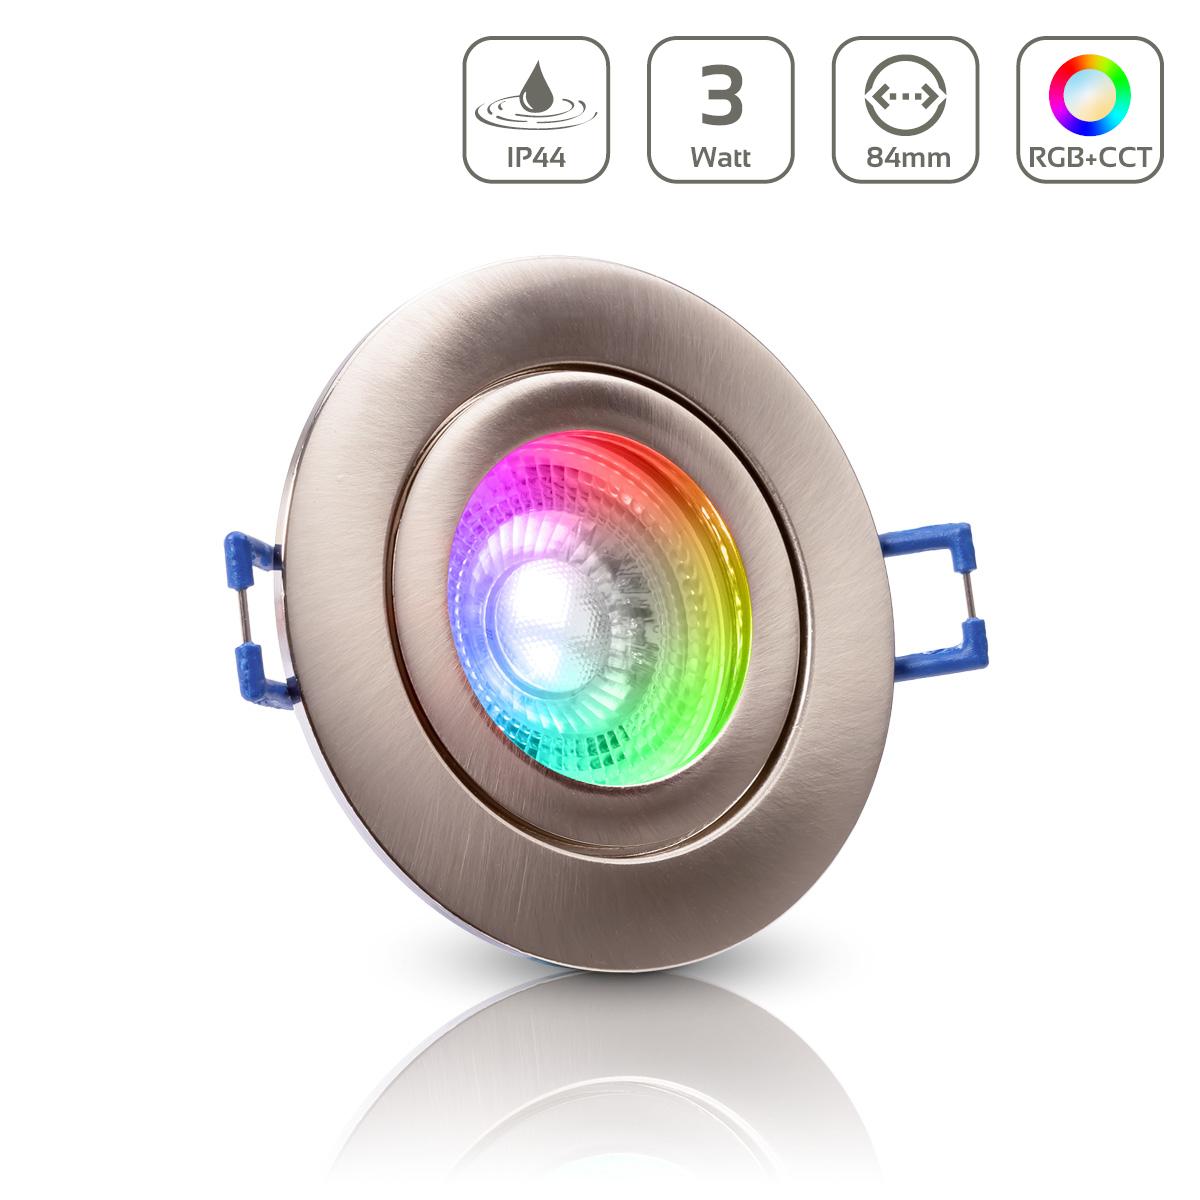 Einbauspot IP44 rund - Farbe: Edelstahl gebürstet - LED Leuchtmittel: GU10 5W RGB+CCT